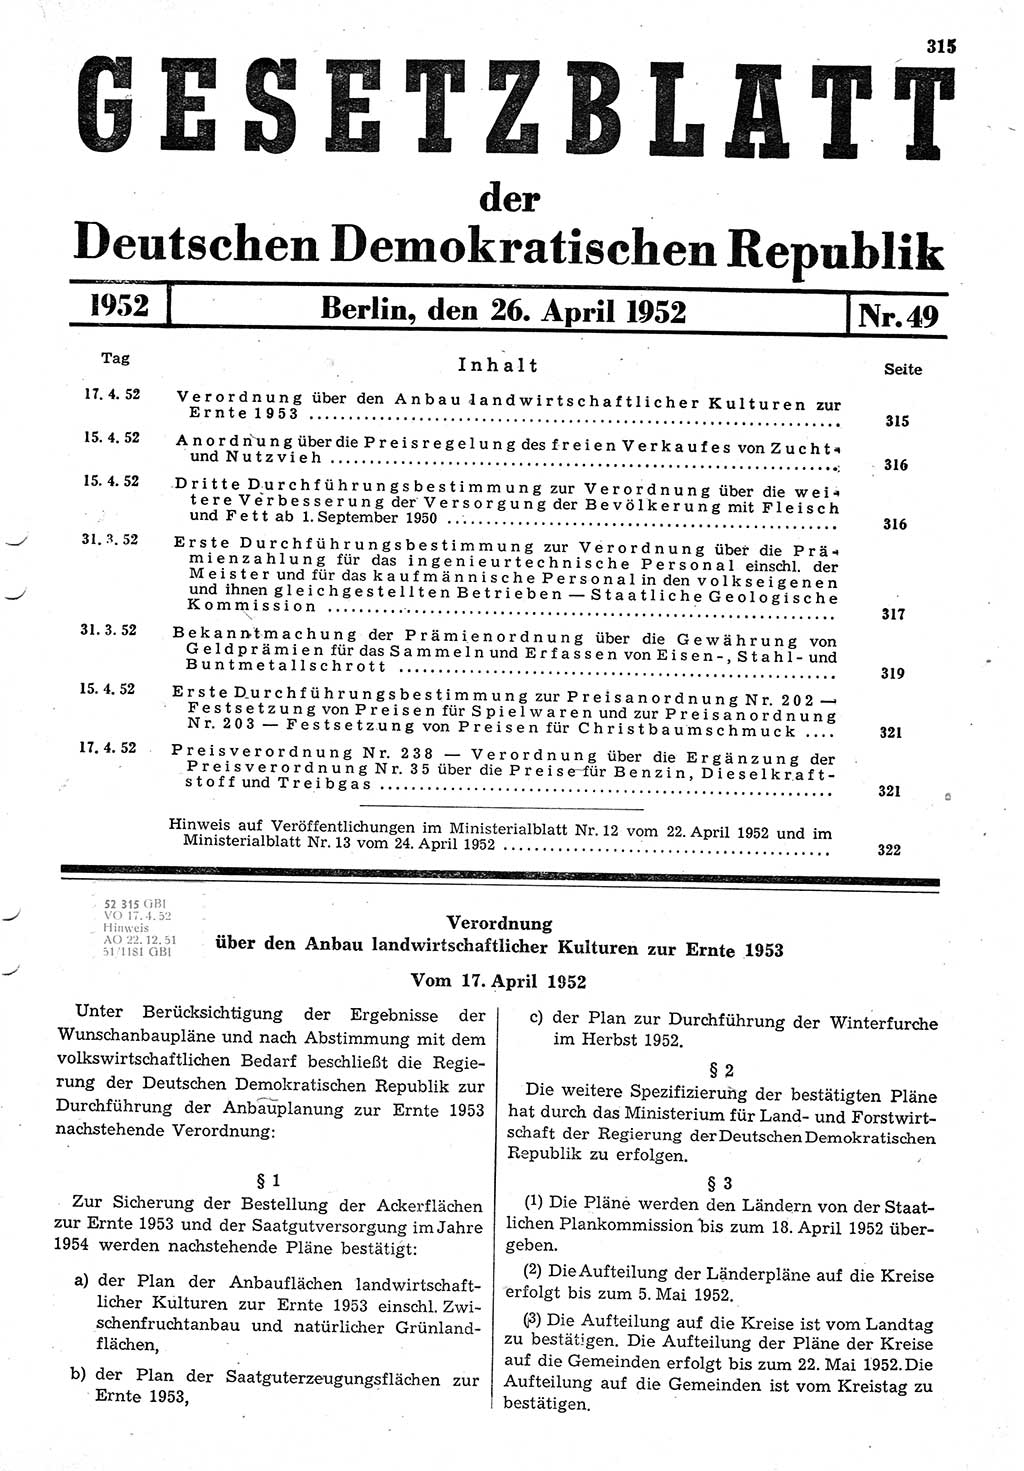 Gesetzblatt (GBl.) der Deutschen Demokratischen Republik (DDR) 1952, Seite 315 (GBl. DDR 1952, S. 315)